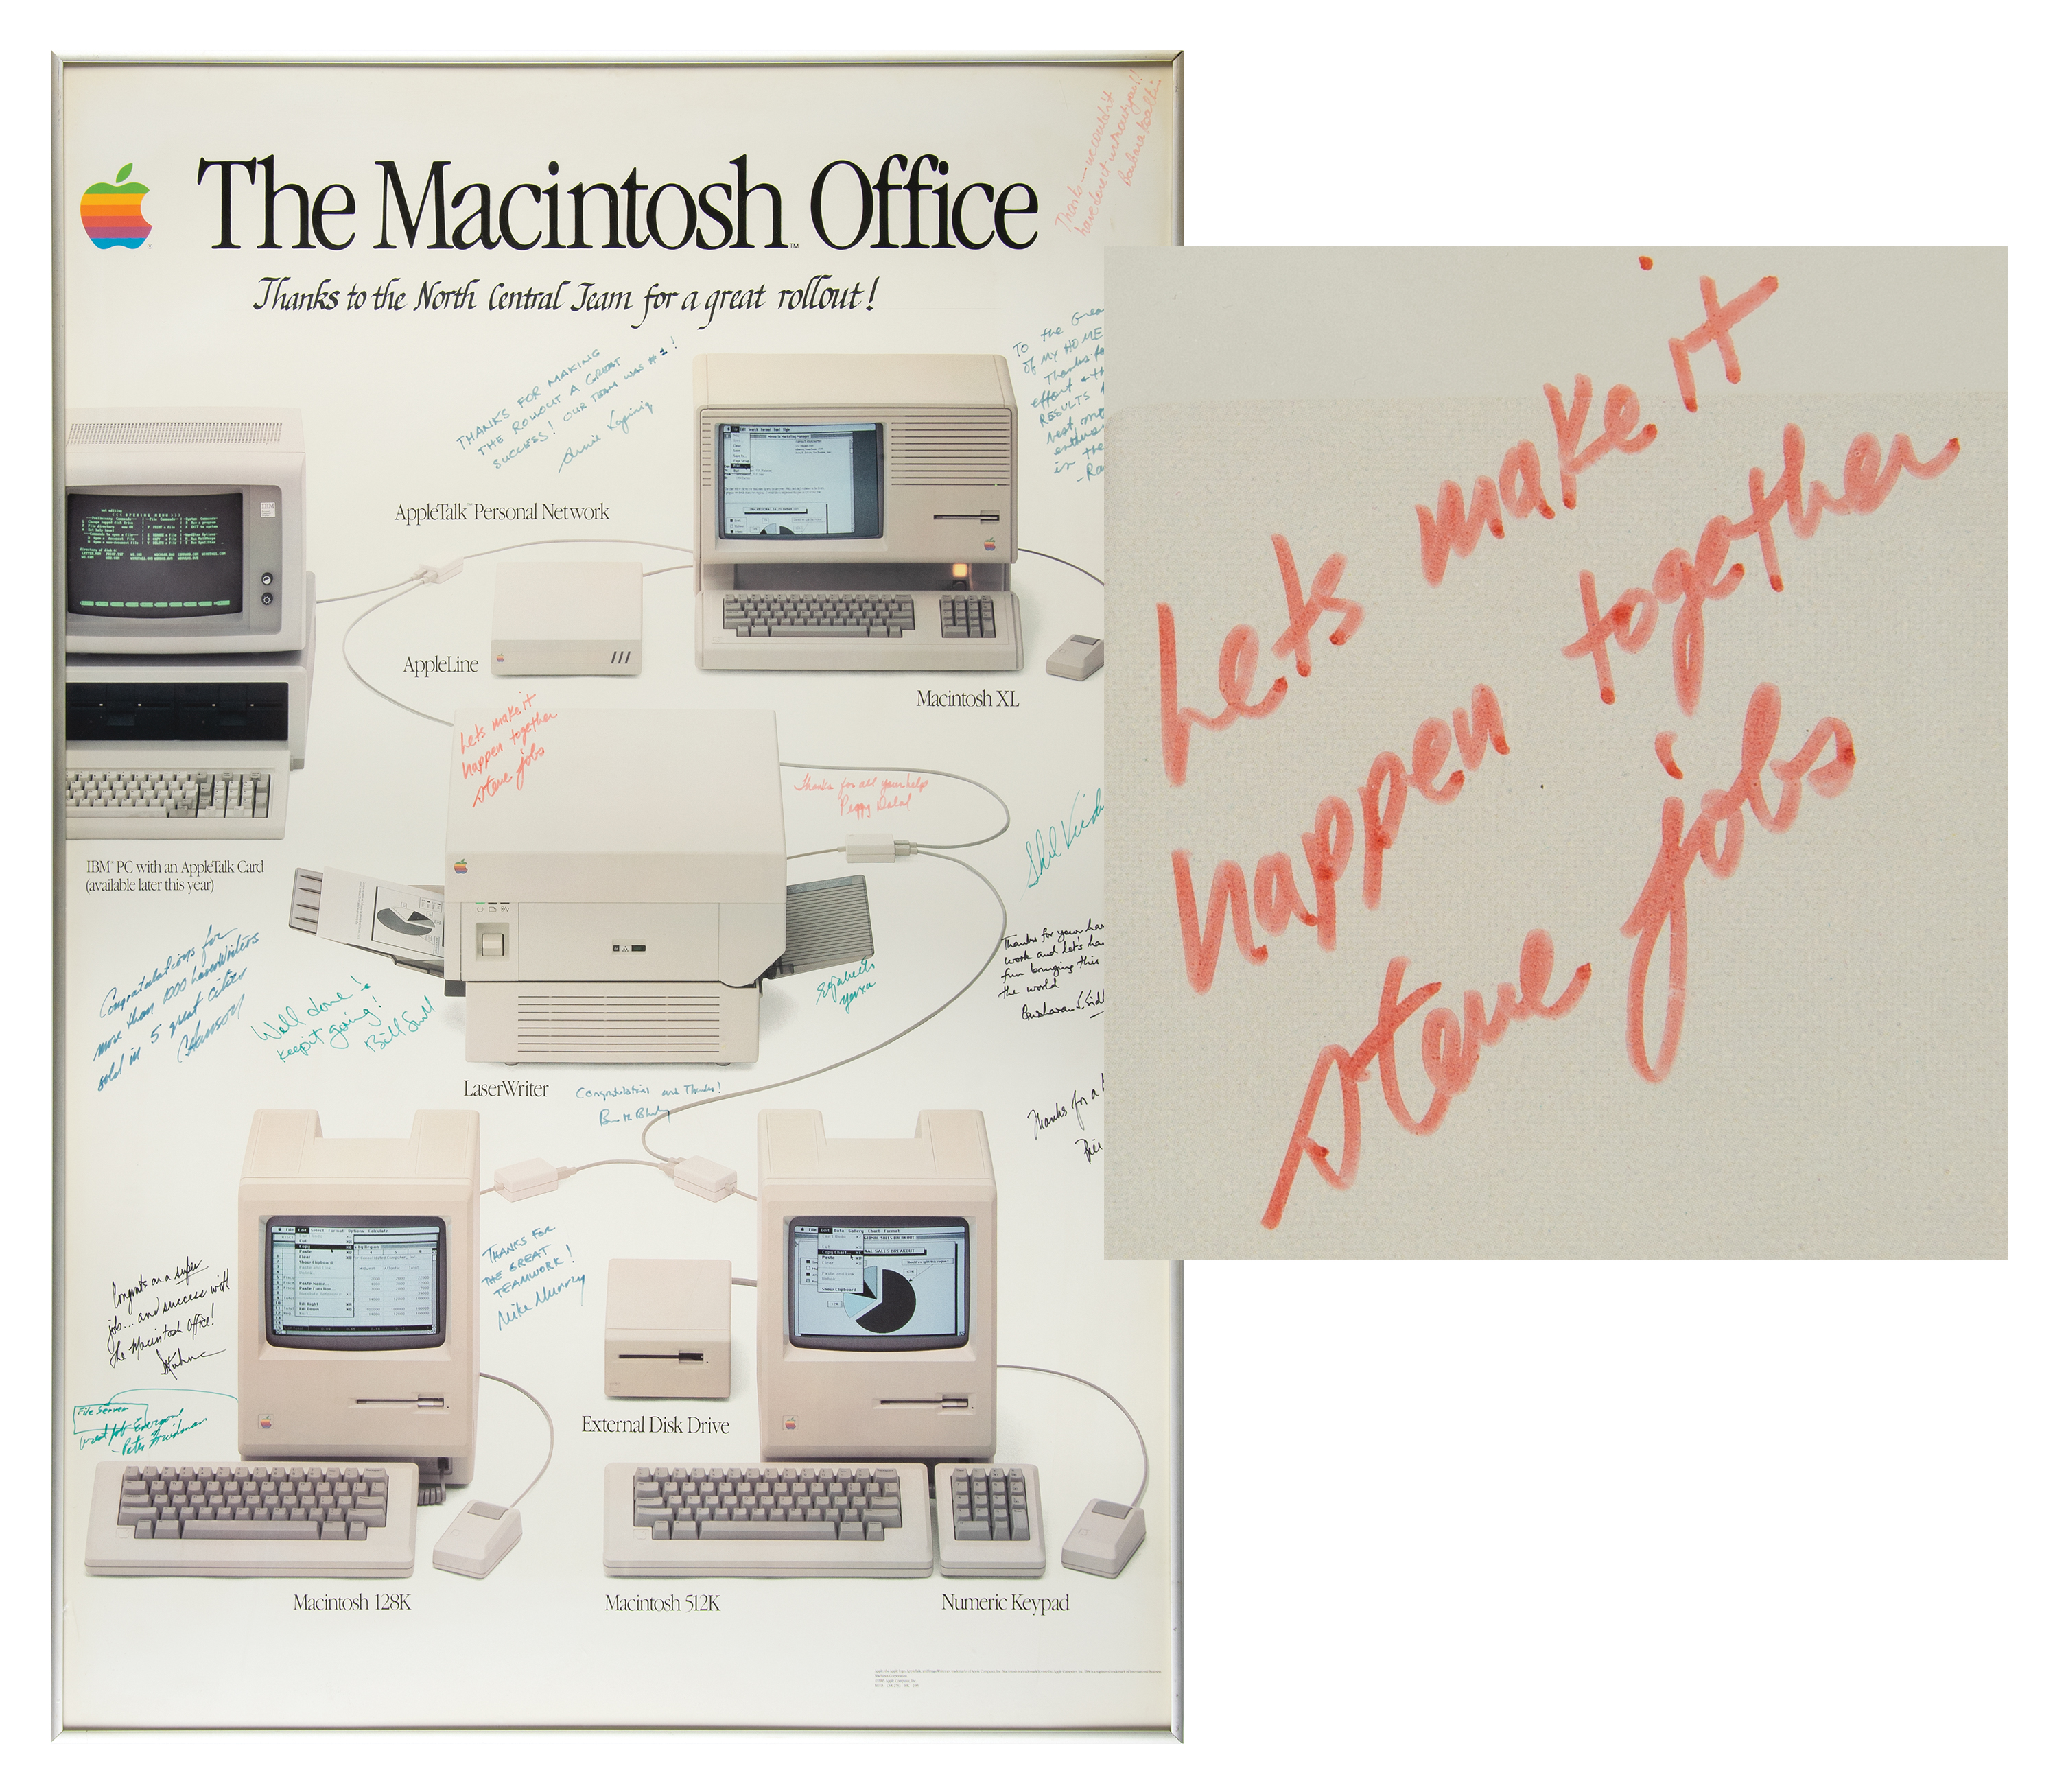 Lot #5006 Steve Jobs Signed 'Macintosh Office' Poster - “Let’s make it happen together, steve jobs